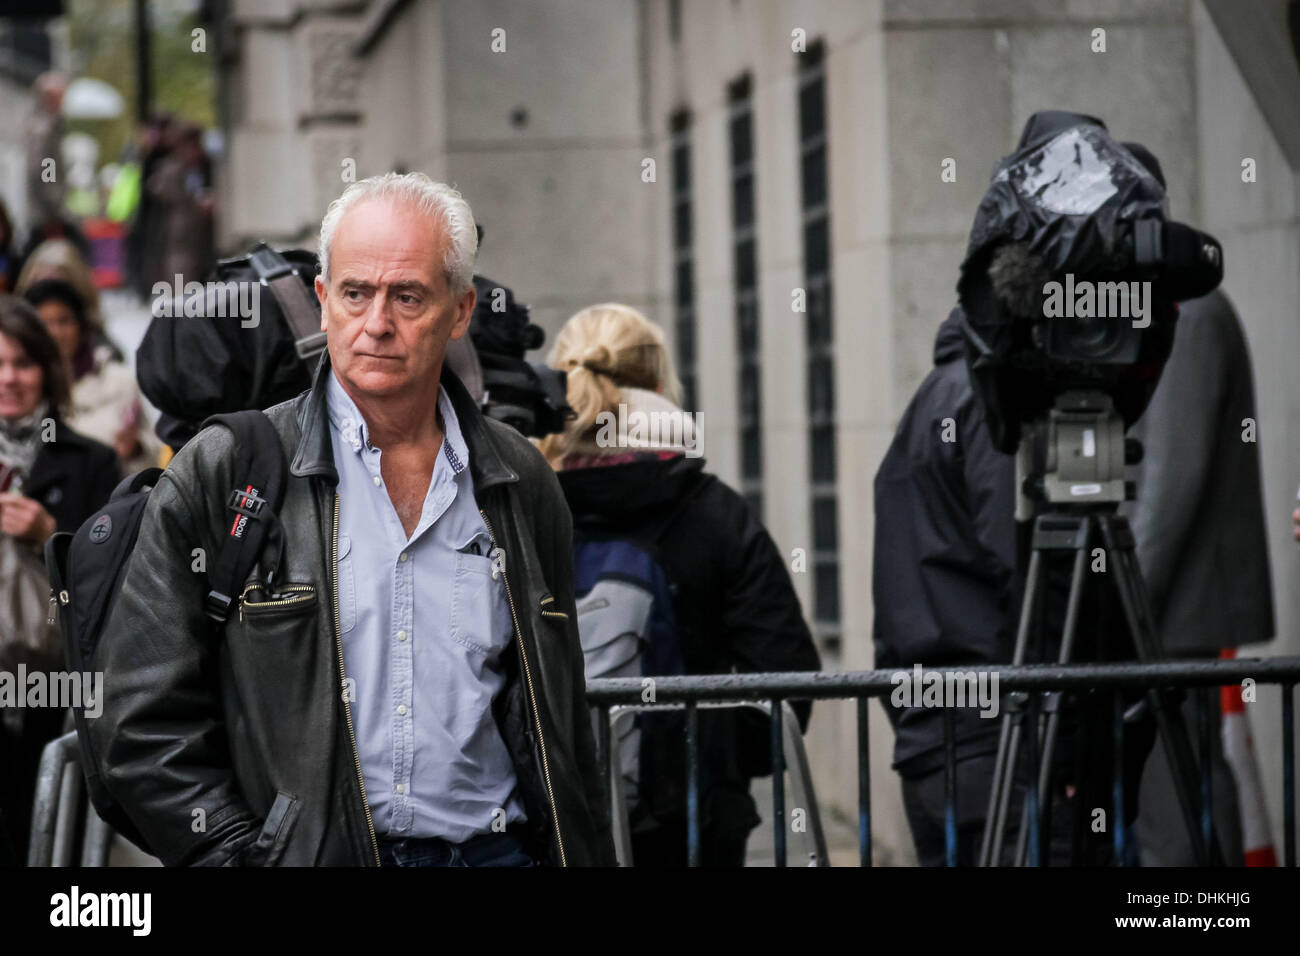 Londres, Royaume-Uni. 12 novembre 2013. La journaliste d'écrivain et de tuteur, Nick Davies, arrive à la cour Old Bailey à Londres. Crédit : Guy Josse/Alamy Live News Banque D'Images